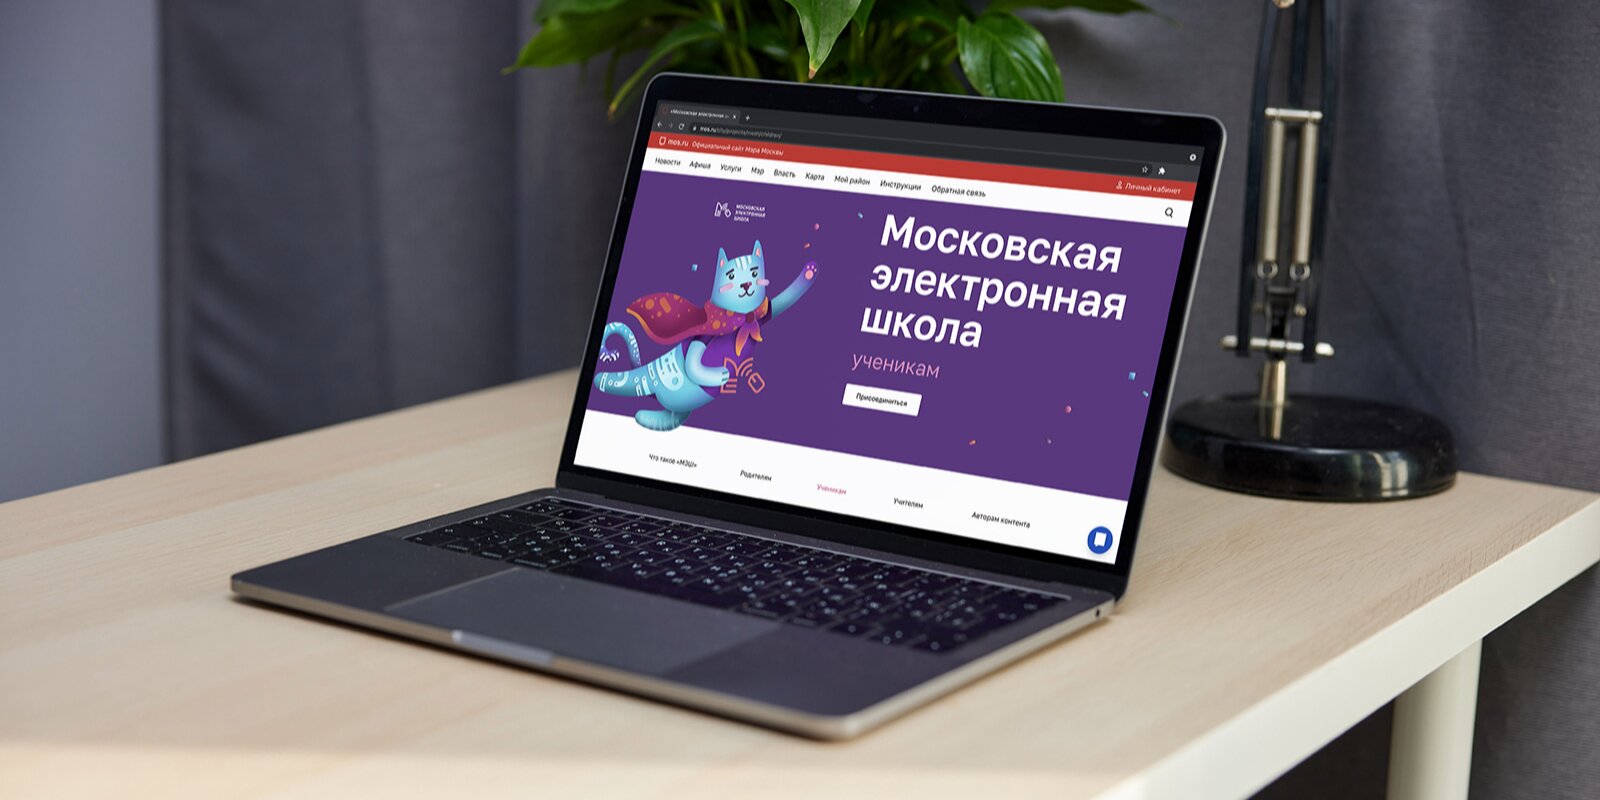 Тематическая страница «Московской электронной школы» на сайте мэра Москвы получила обновления. Фото: mos.ru